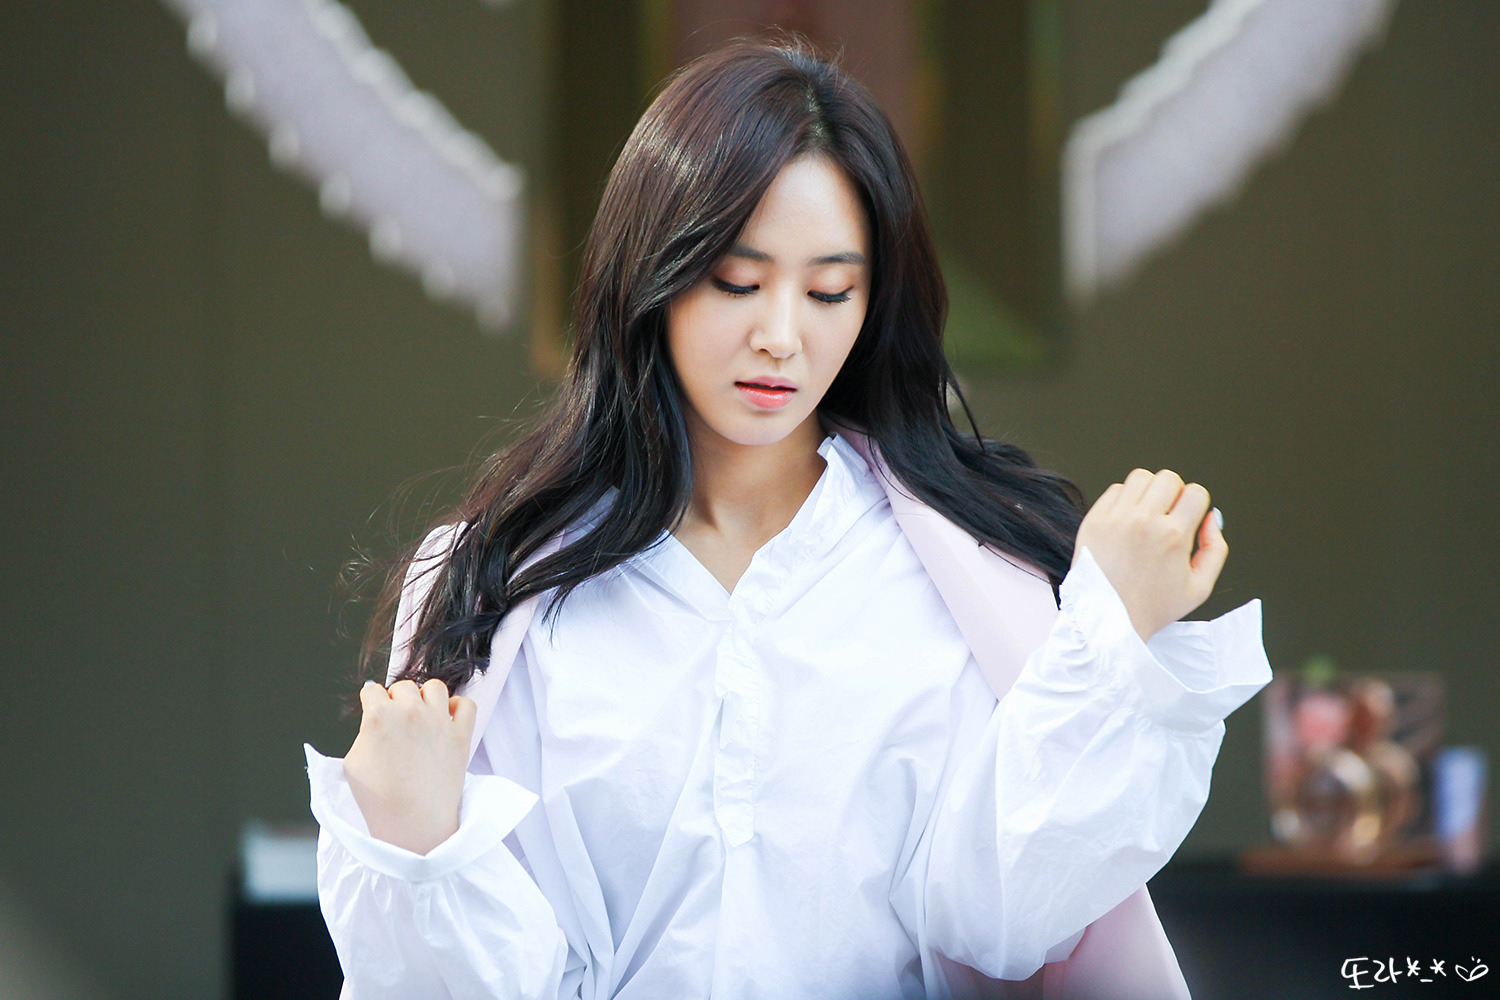 [PIC][09-10-2016]Yuri tham dự buổi Fansign thứ 2 cho thương hiệu nước hoa "BVLGARI Rose Goldea" tại Myeongdong Lotte Duty Free vào chiều nay - Page 4 2375DF505957A4BC012BC7